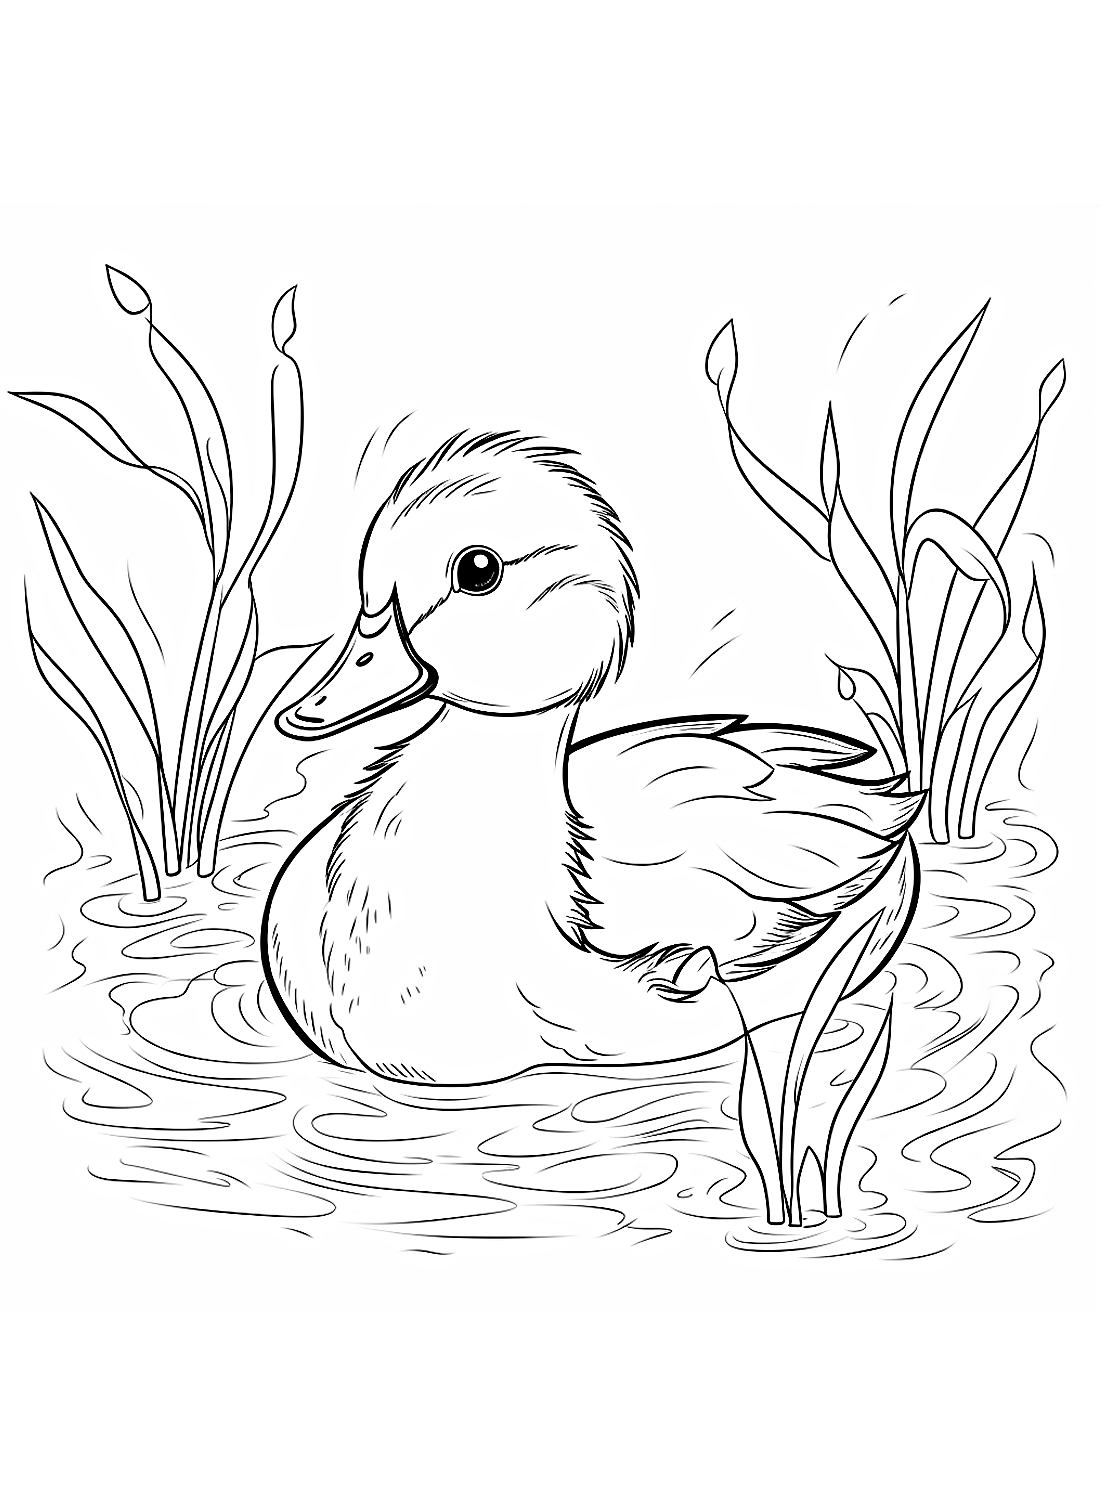 Un canard nageur de Duckling